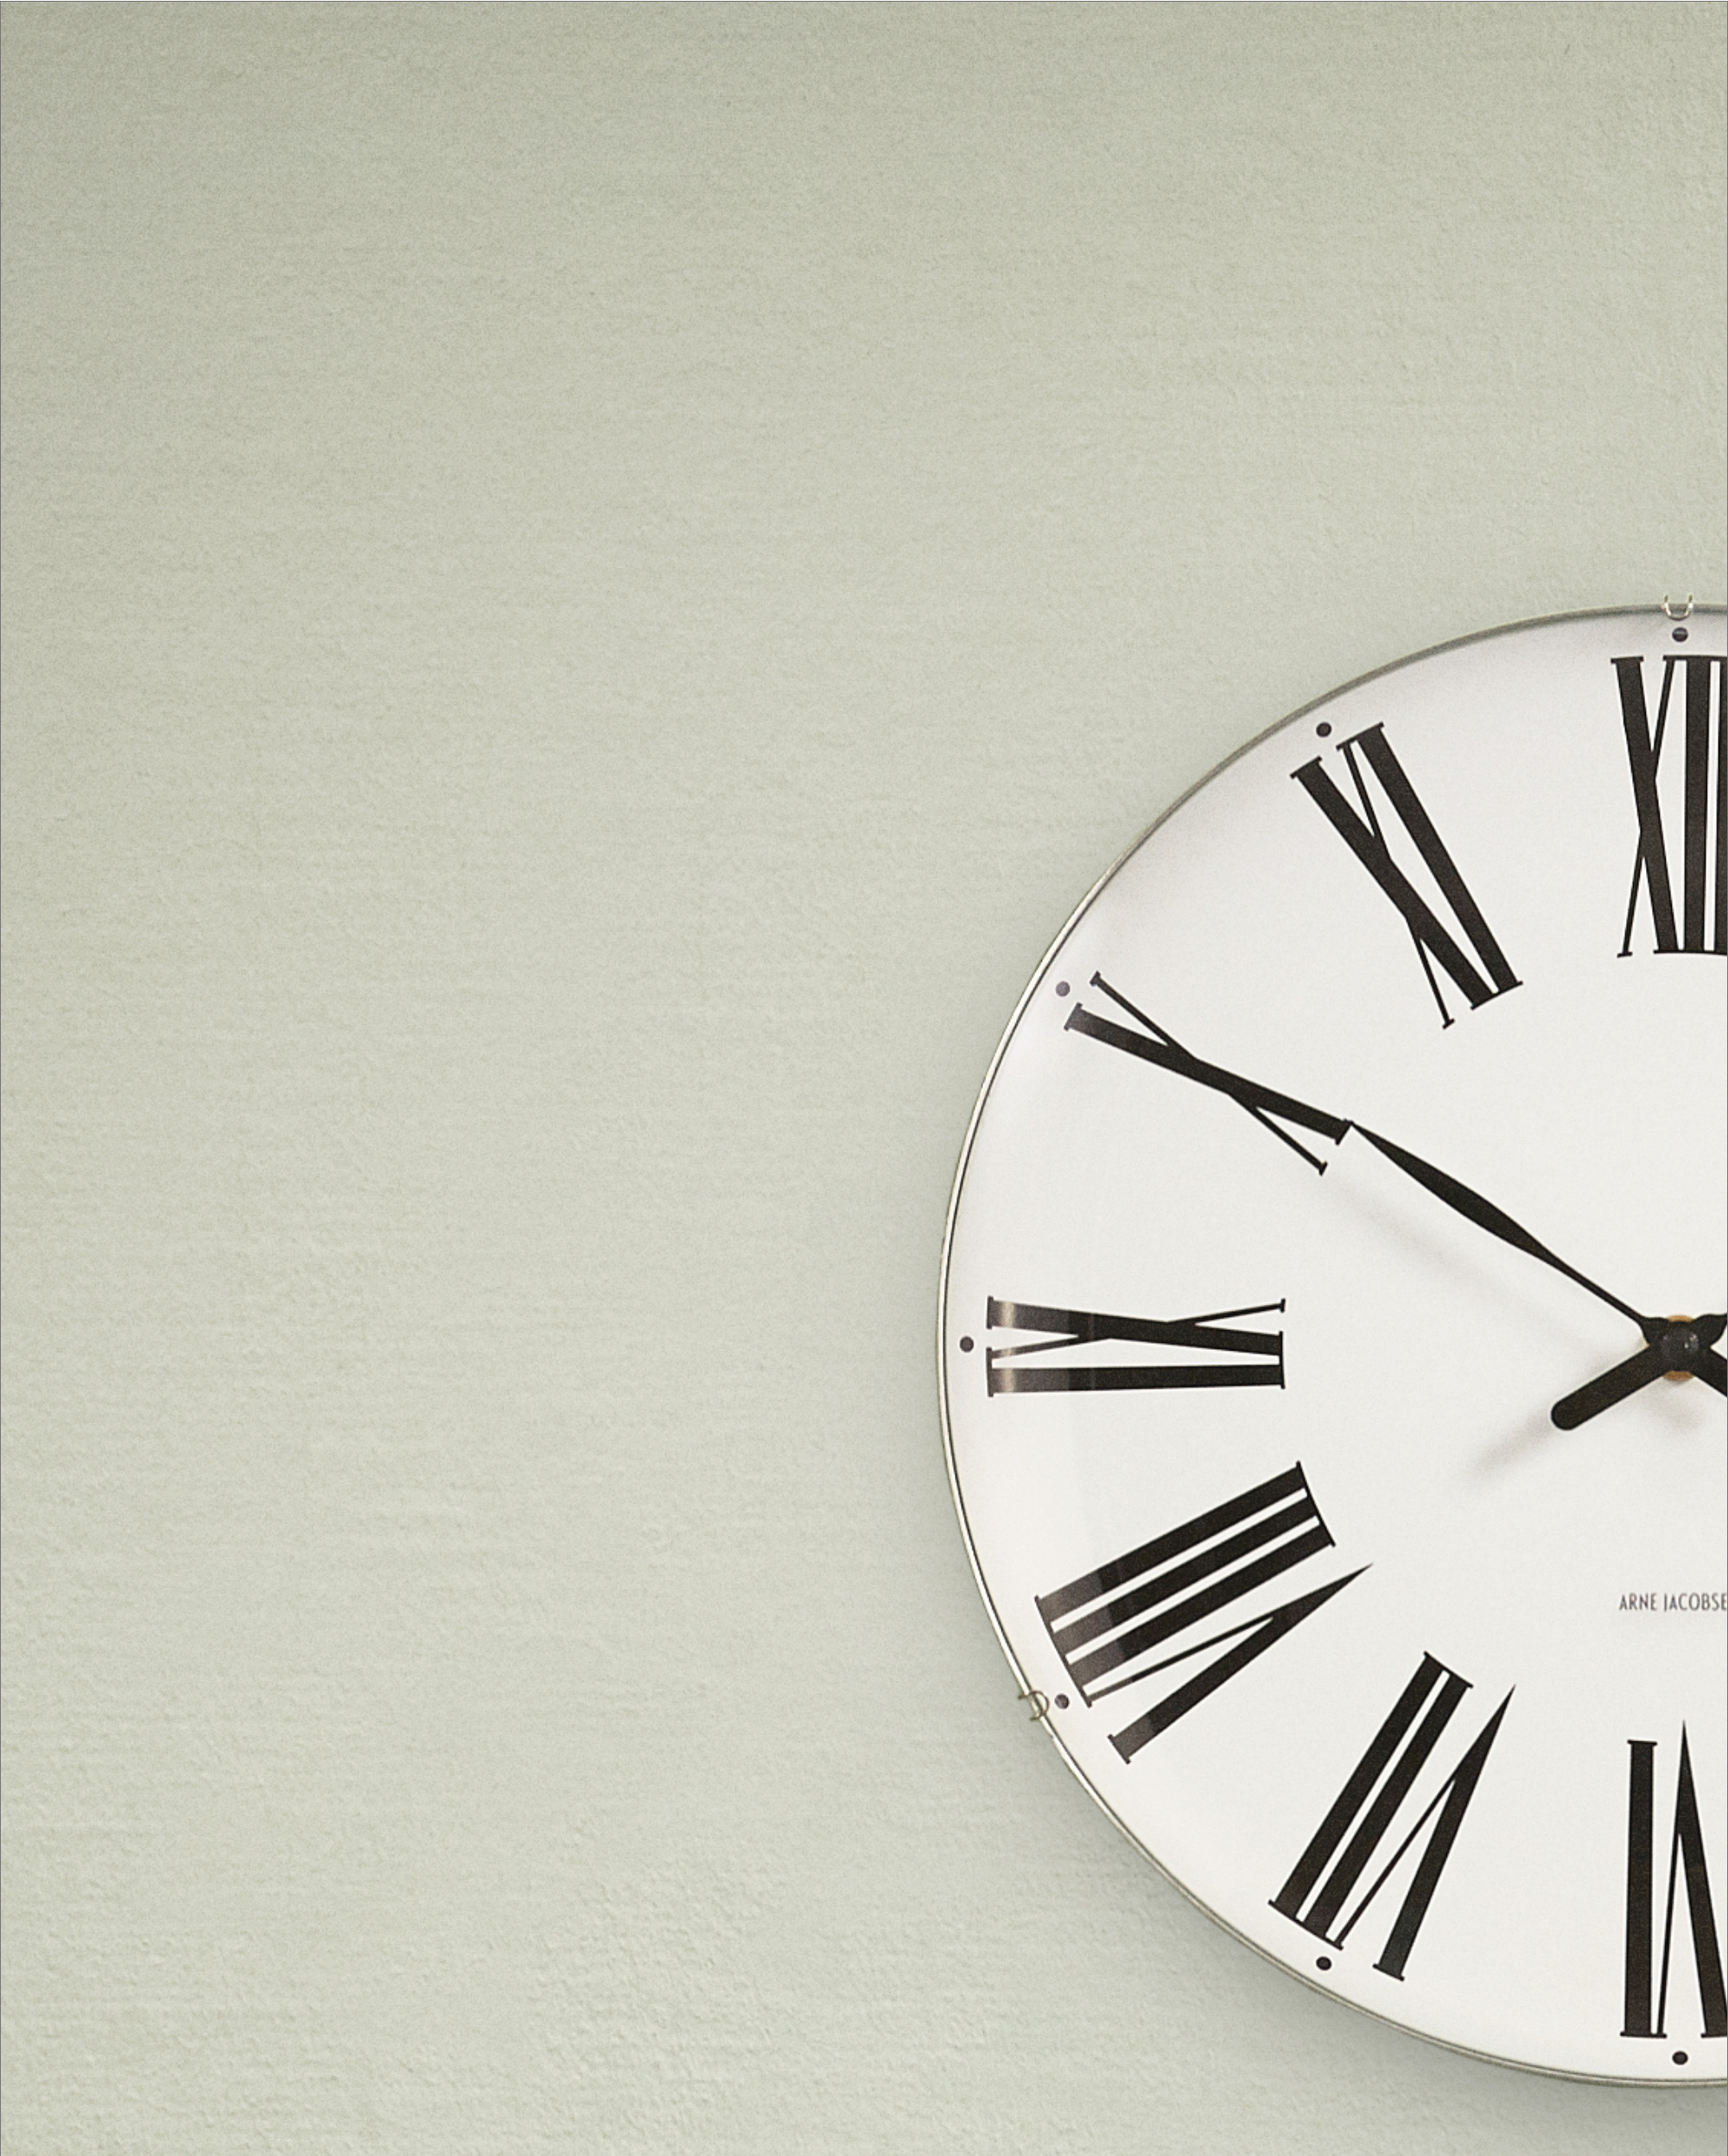 Arne Jacobsen Clocks delivery